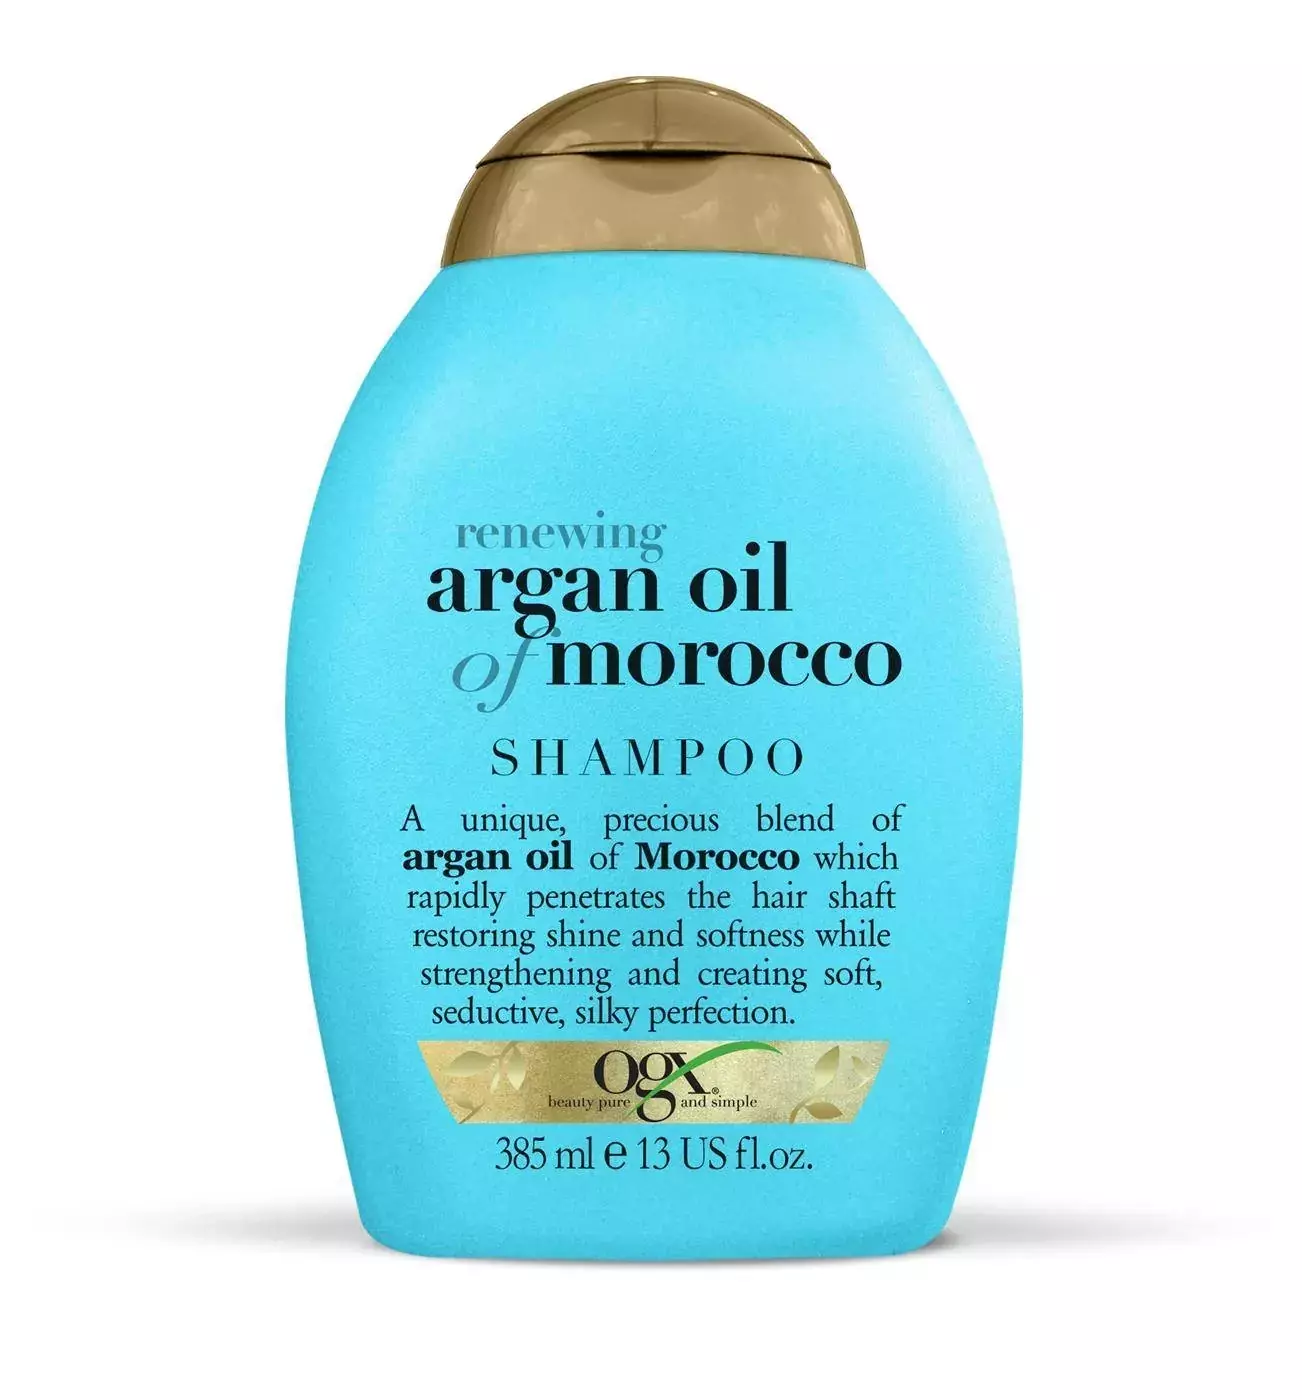 argan smooth szampon z olejkiem arganowym